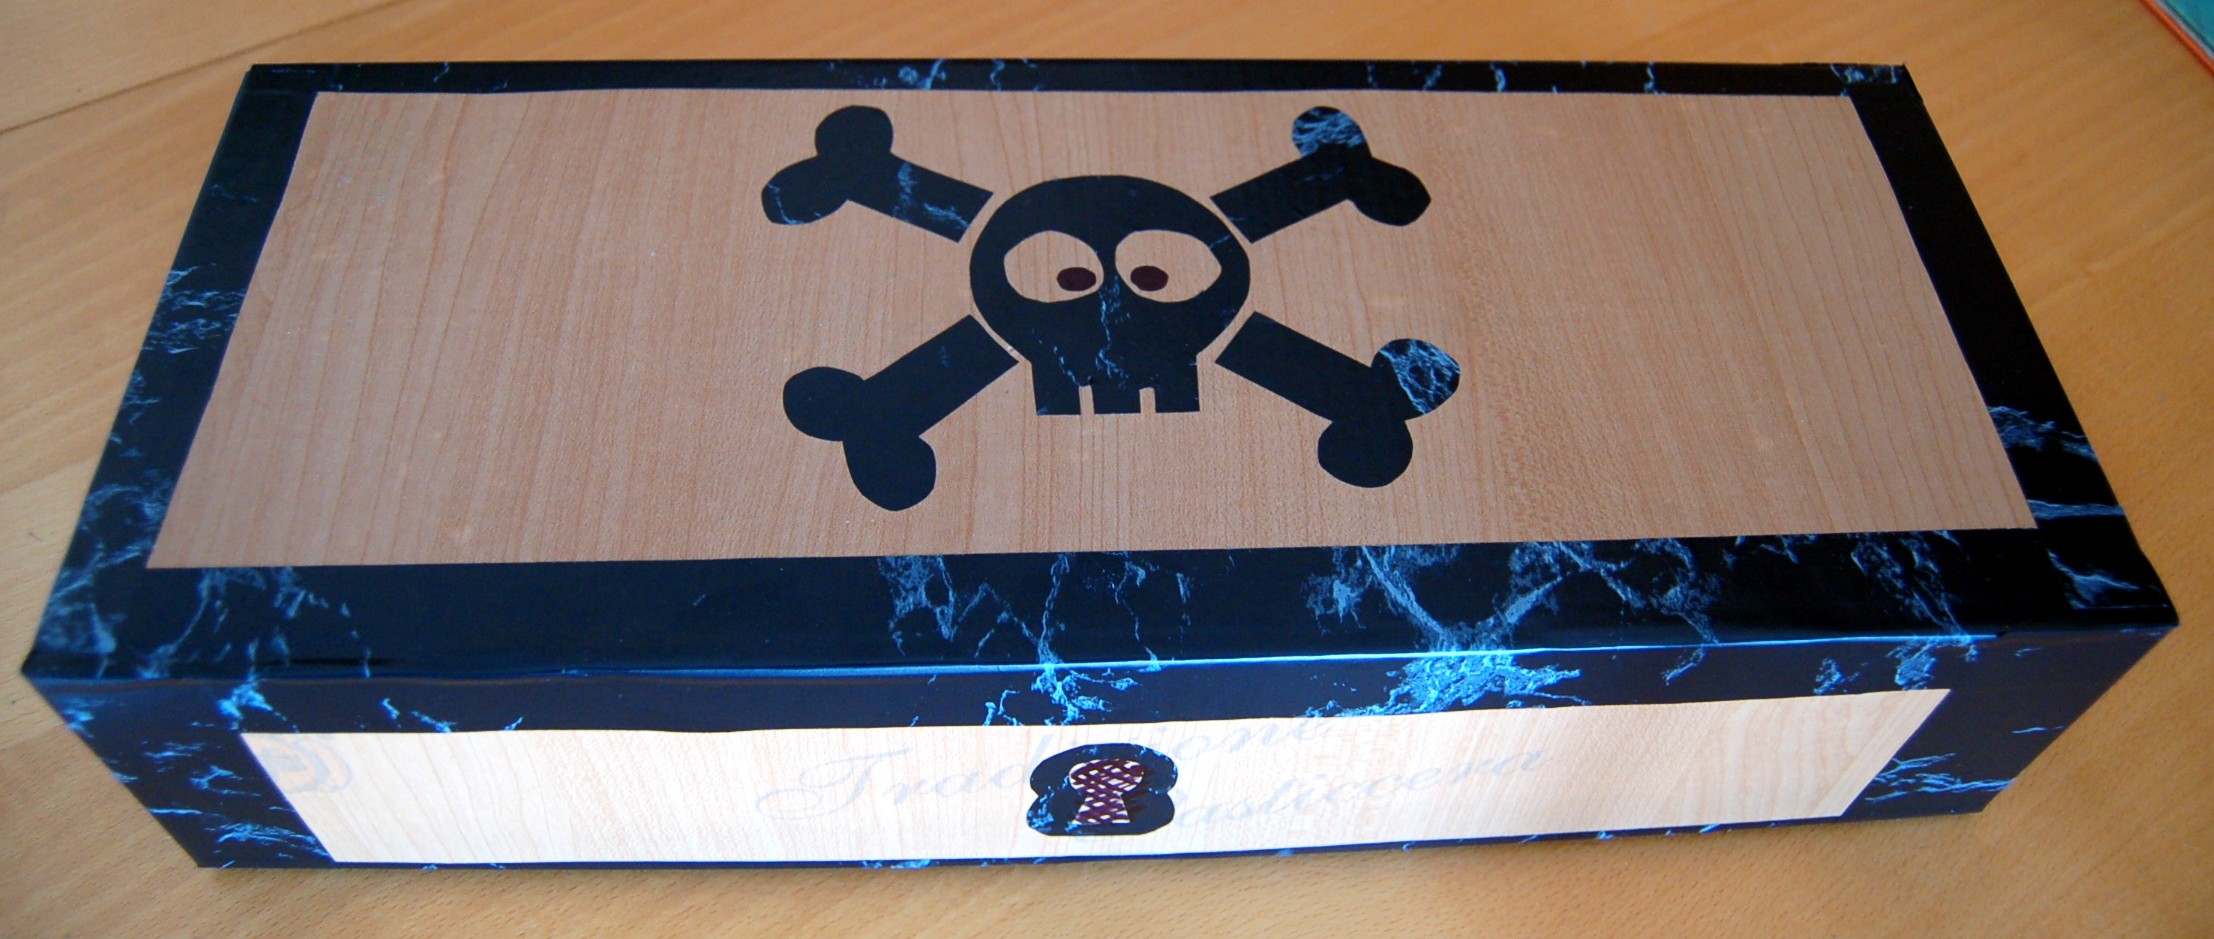 Il forziere dei pirati: un contenitore fai da te per giochi